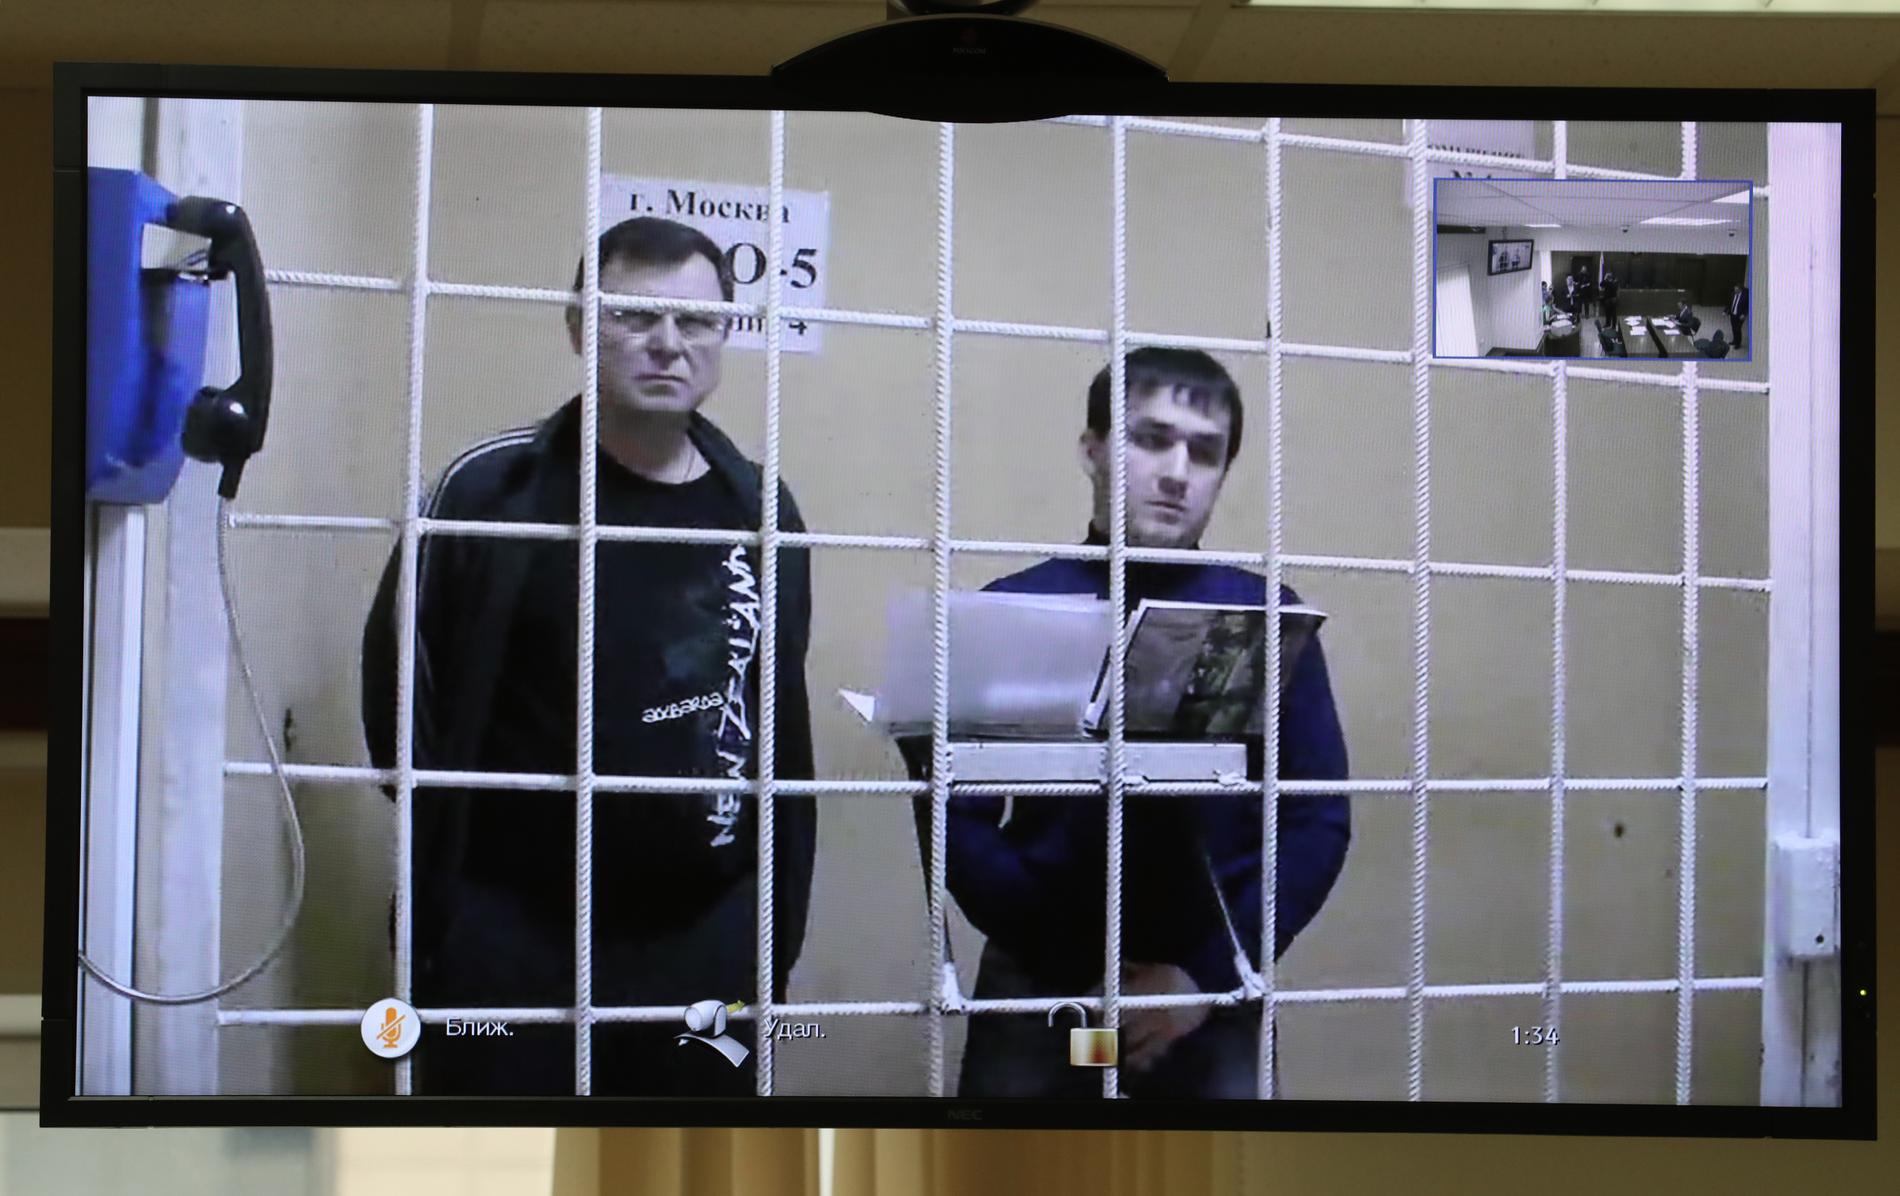 Två av de misstänkta, Vladimir Kalmykov och Ishtimir Khudzhamov.